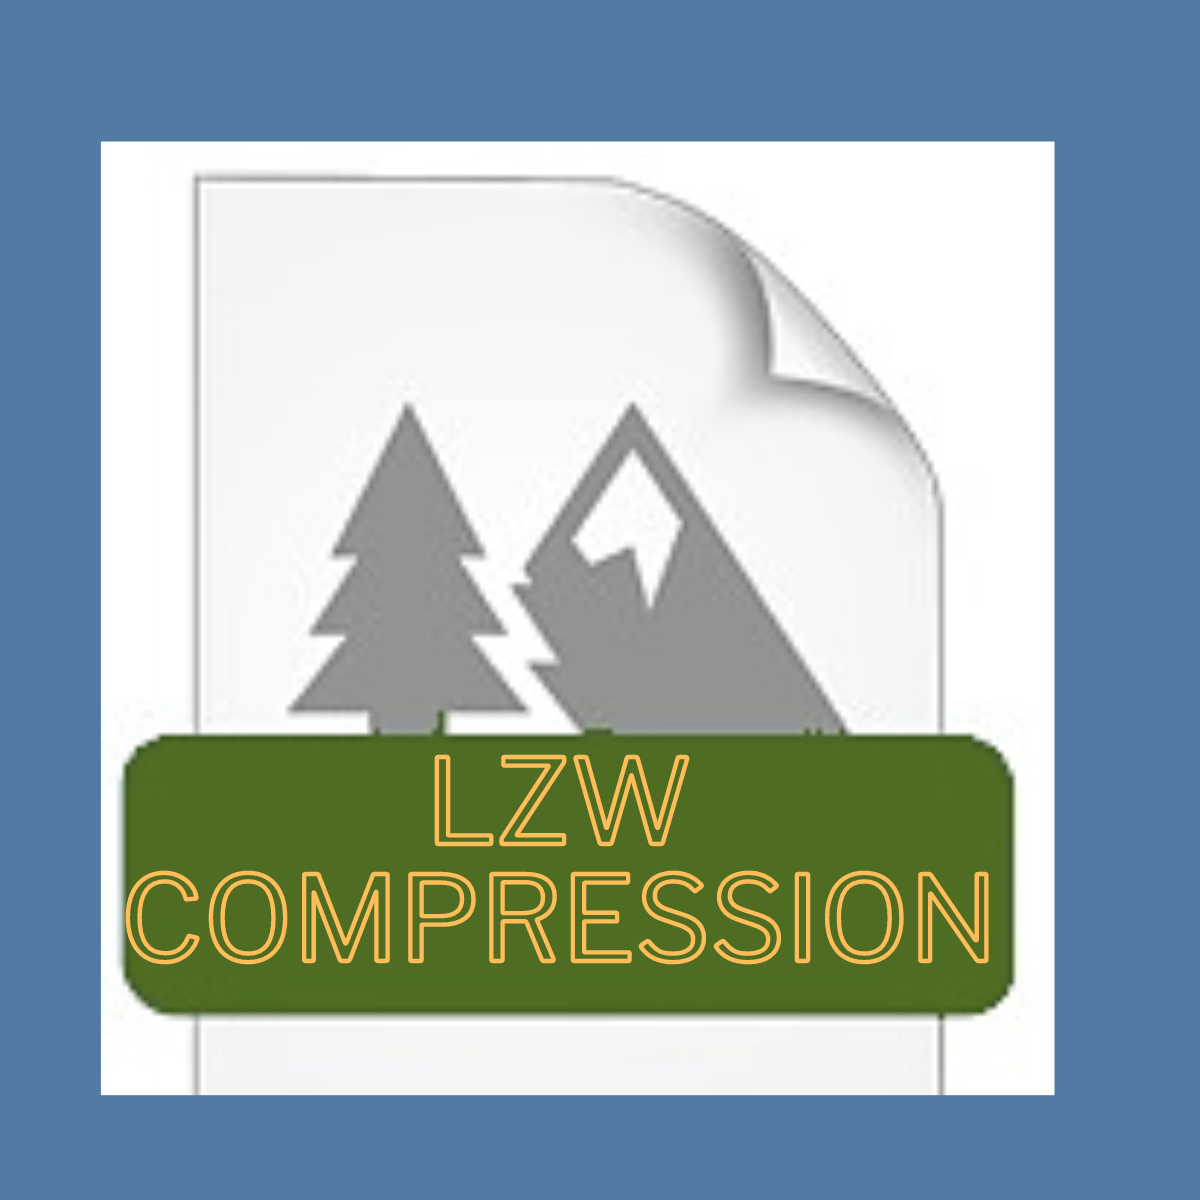 lzw compression